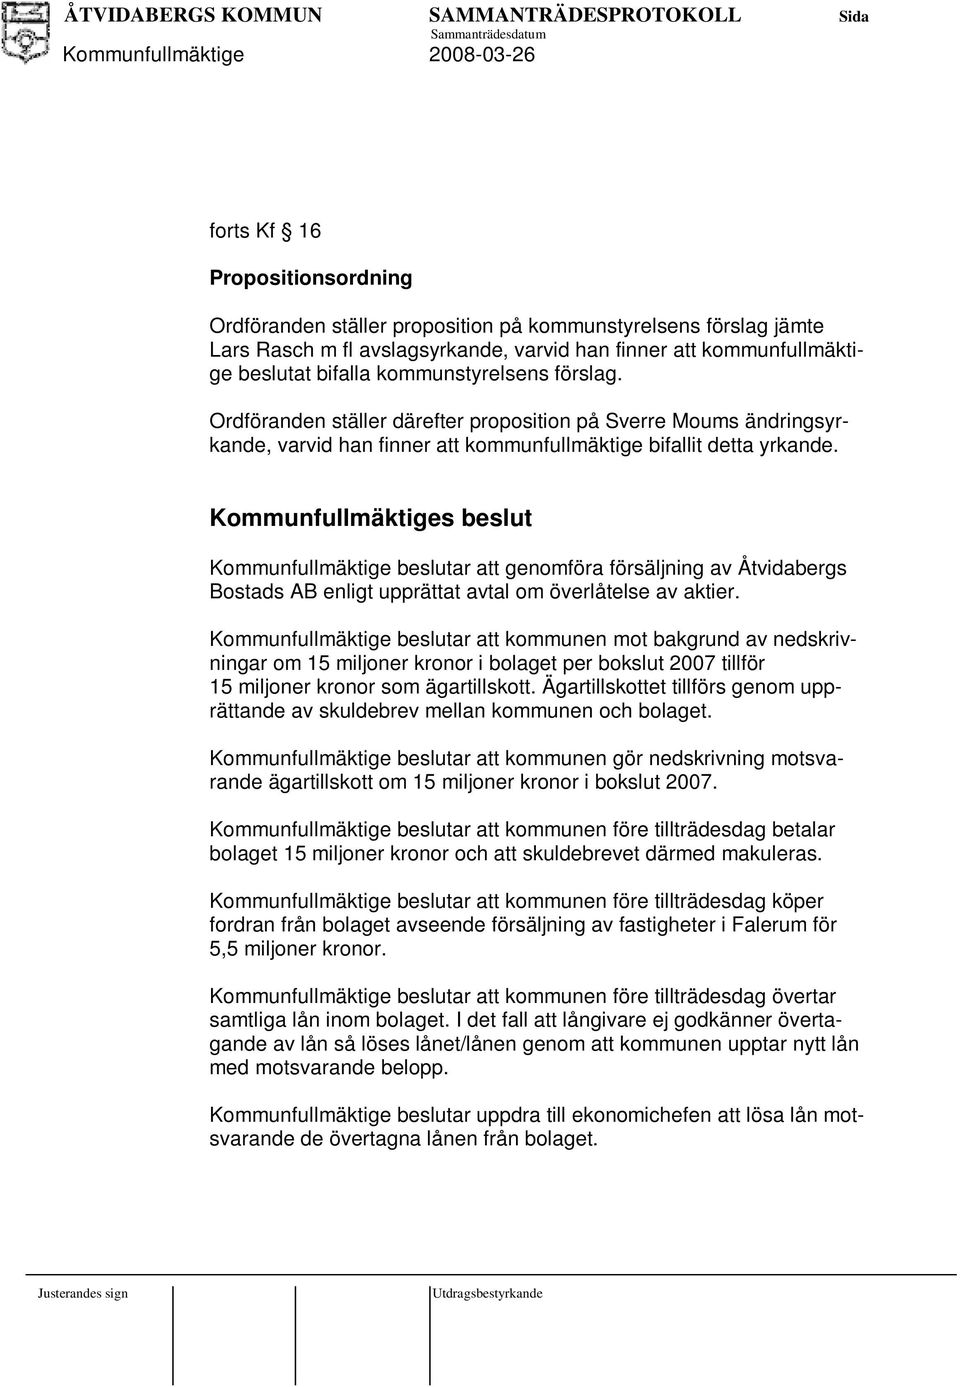 Kommunfullmäktiges beslut Kommunfullmäktige beslutar att genomföra försäljning av Åtvidabergs Bostads AB enligt upprättat avtal om överlåtelse av aktier.